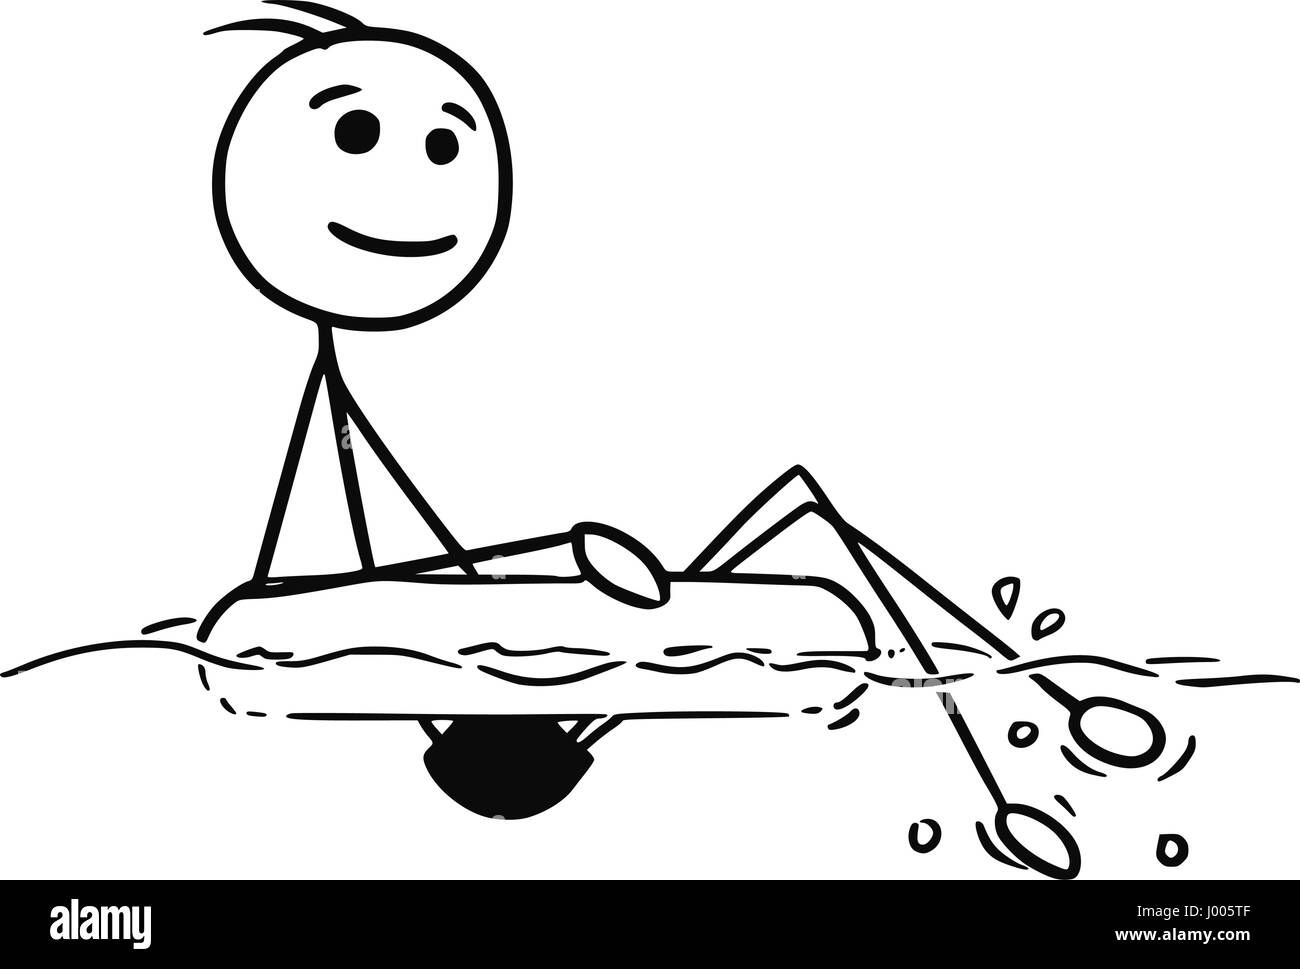 Vettore di Cartoon stickman sorridente godendo relax seduti sul gonfiabile anello nuotare Illustrazione Vettoriale